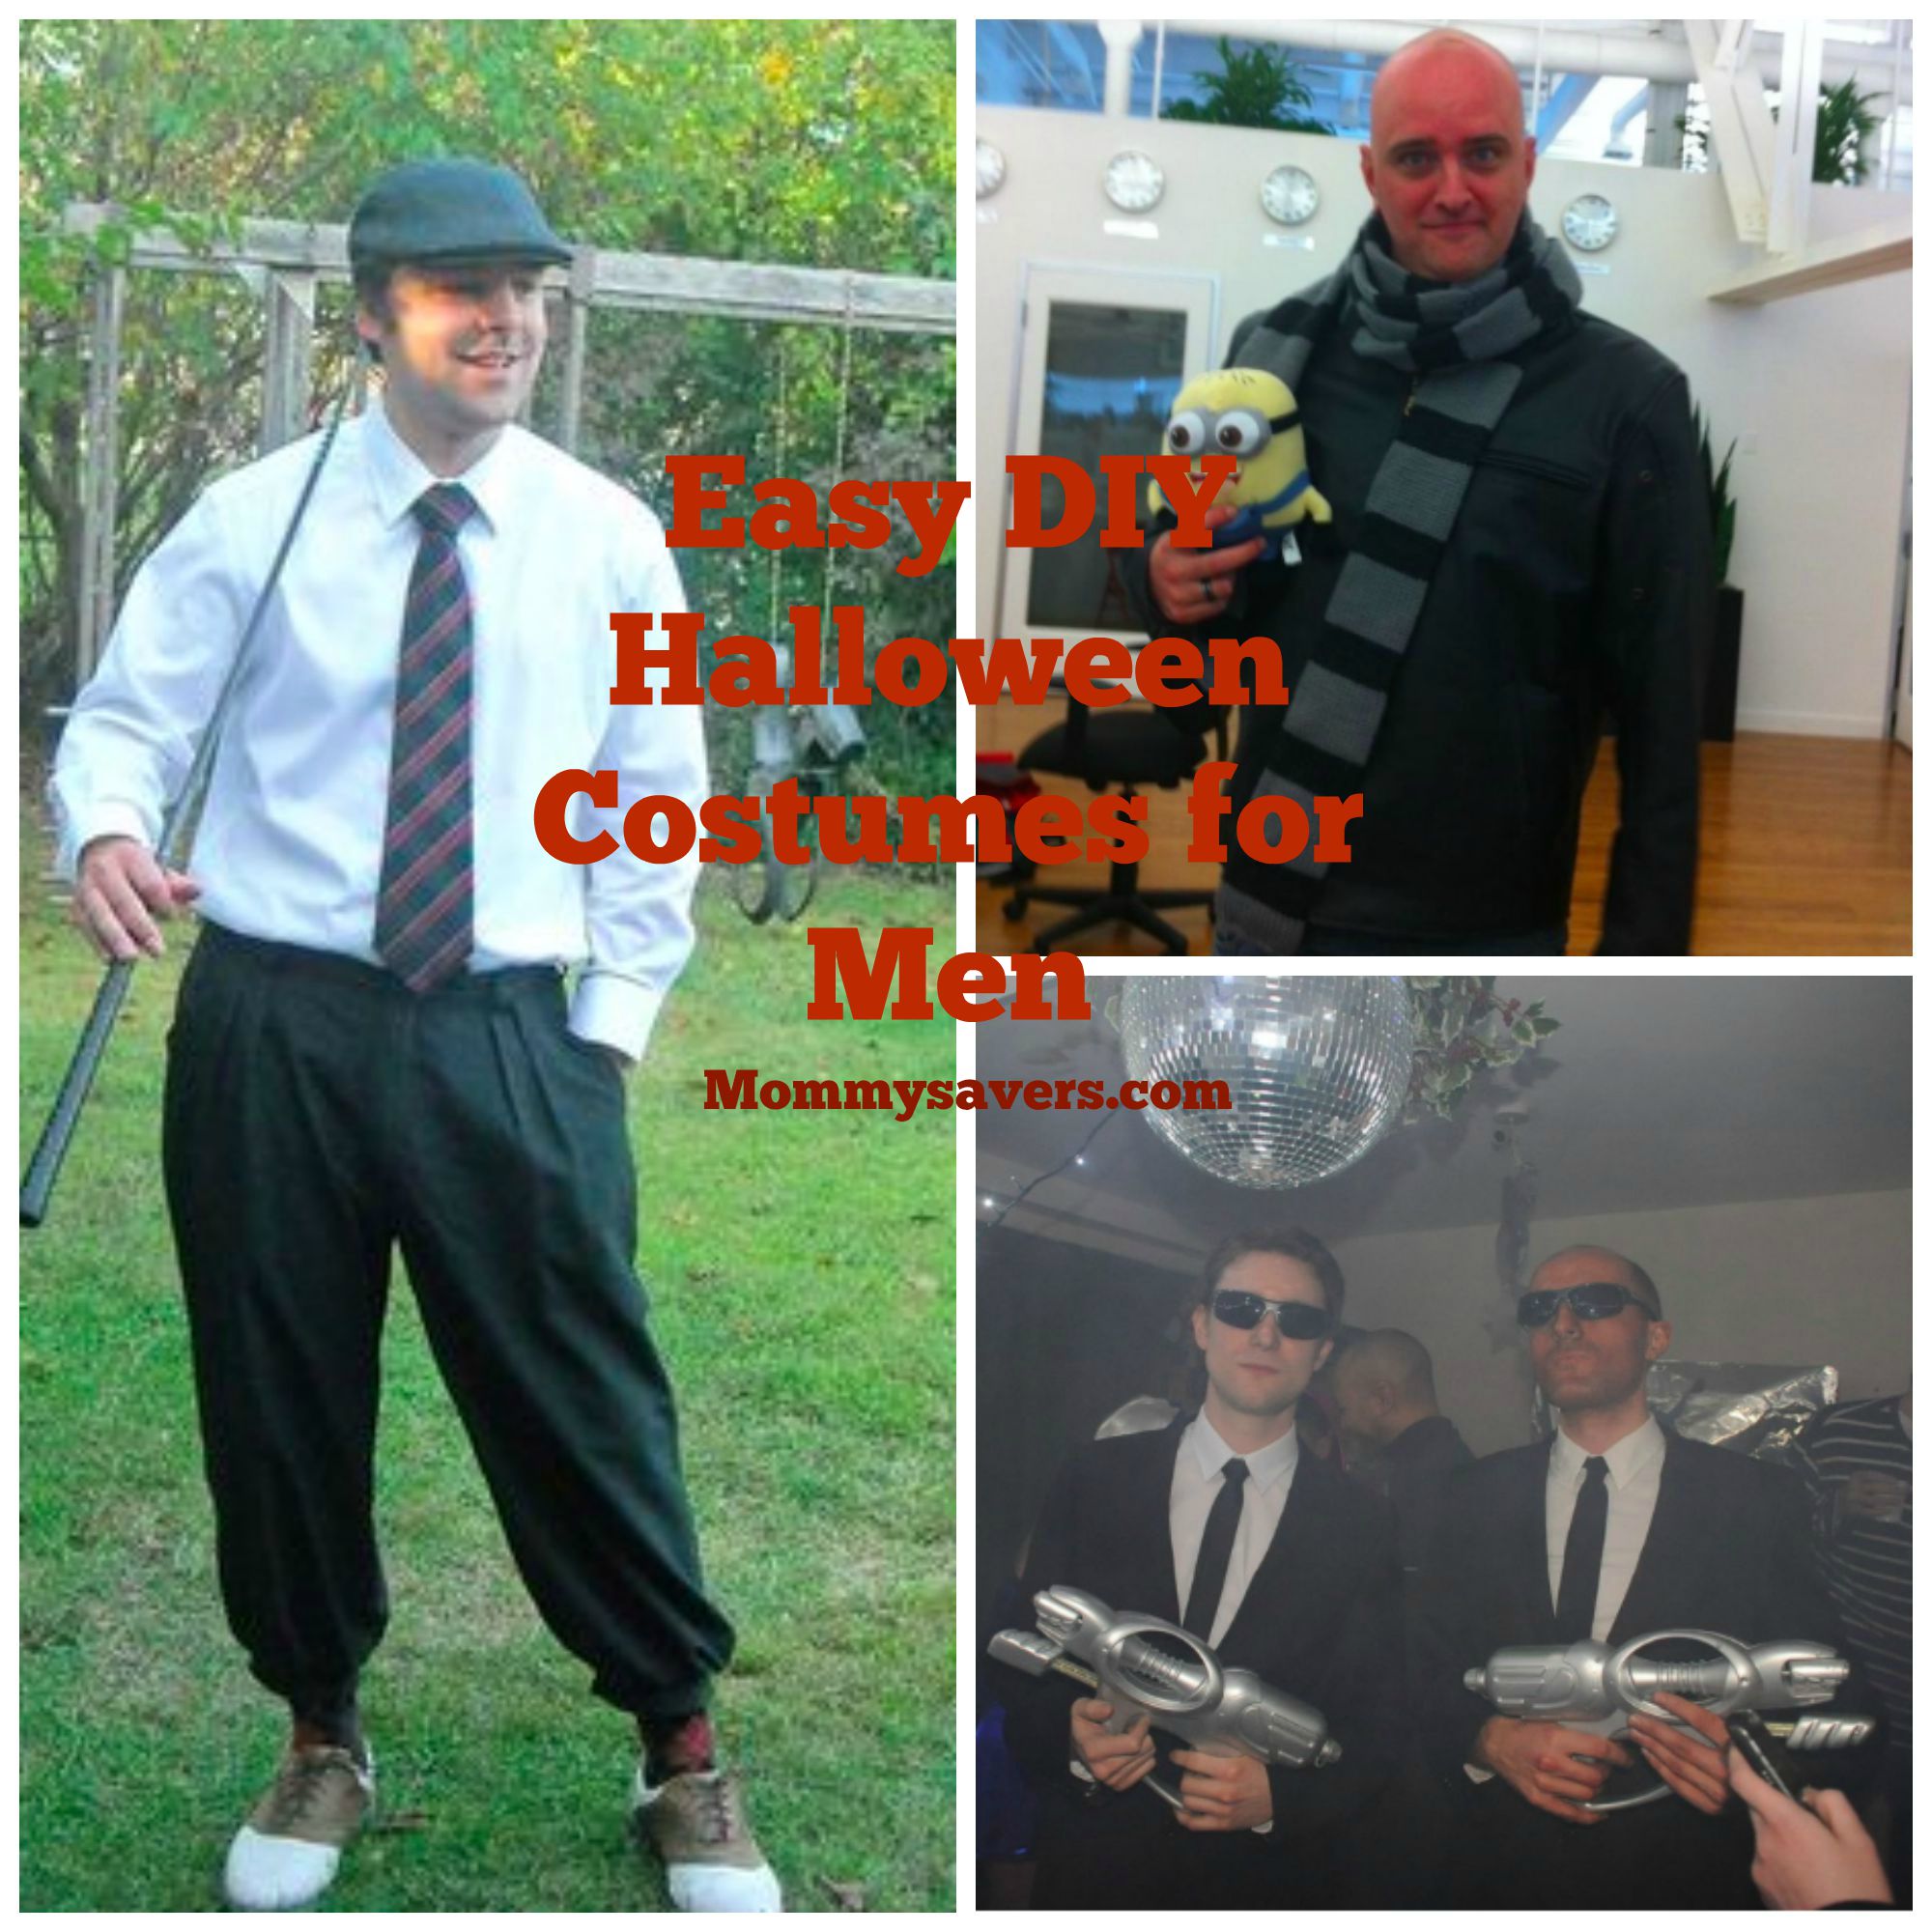 diy easy halloween costume ideas for men - mommysavers